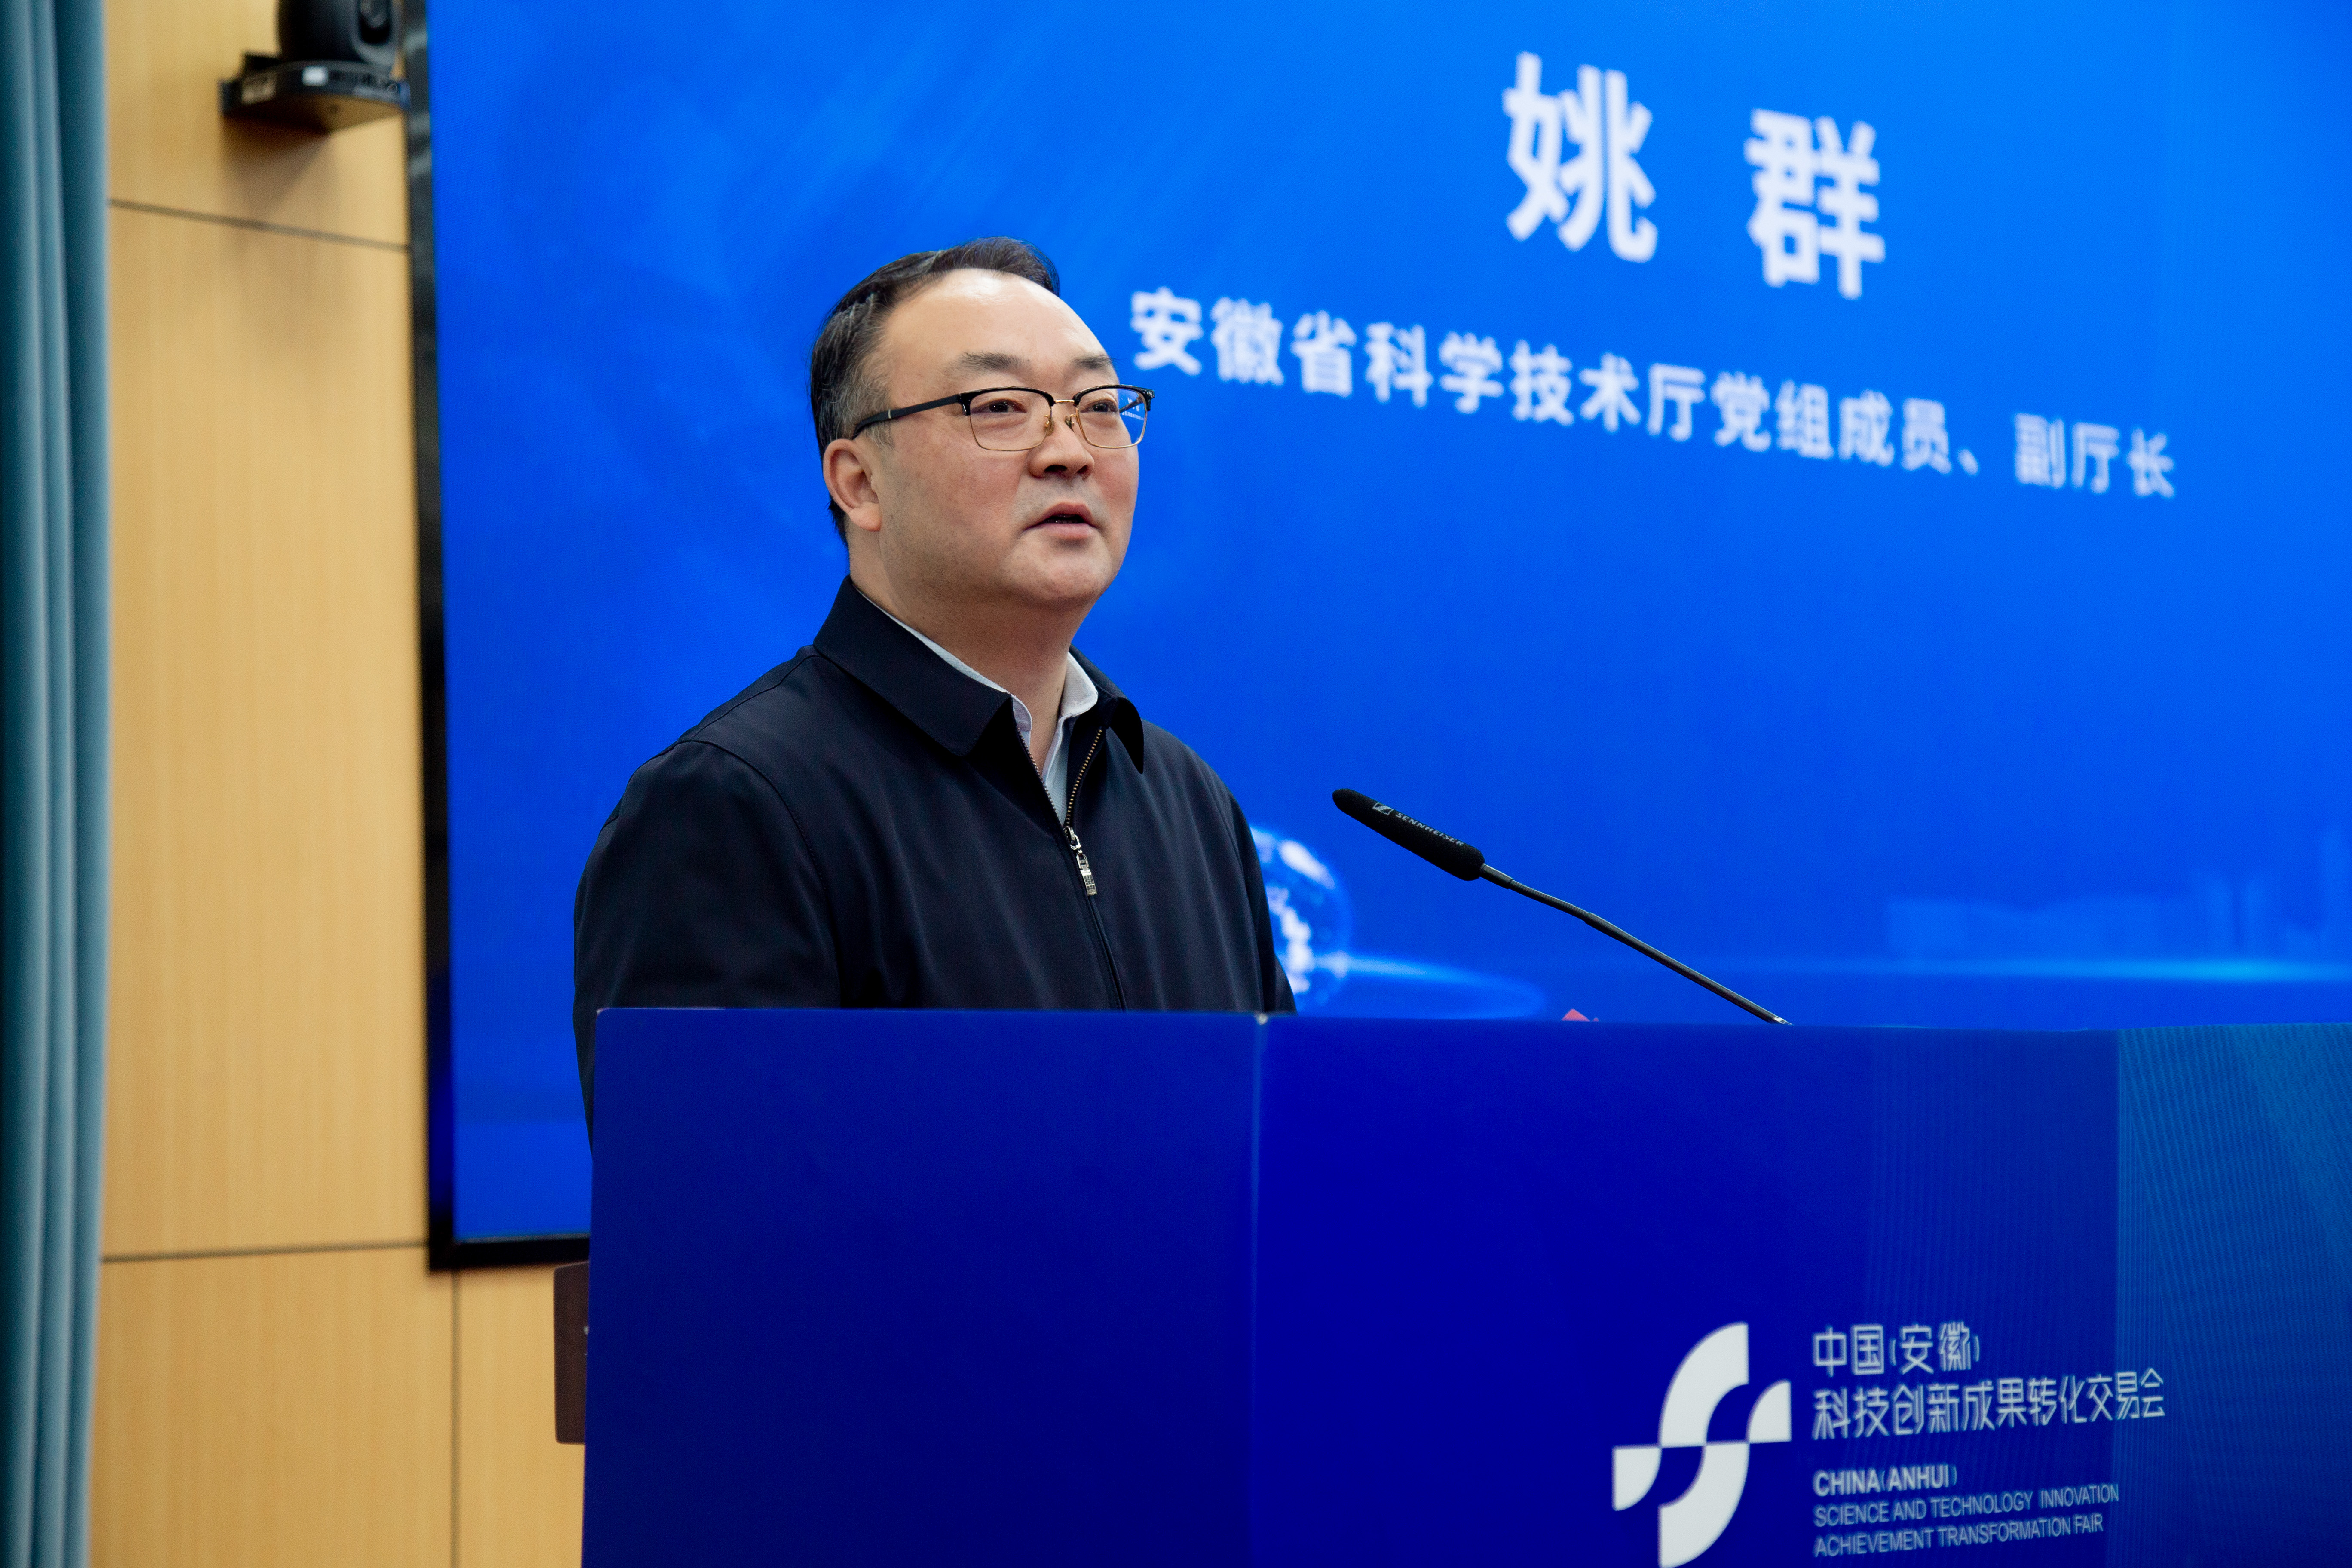 安徽省科学技术厅党组成员、副厅长姚群致辞